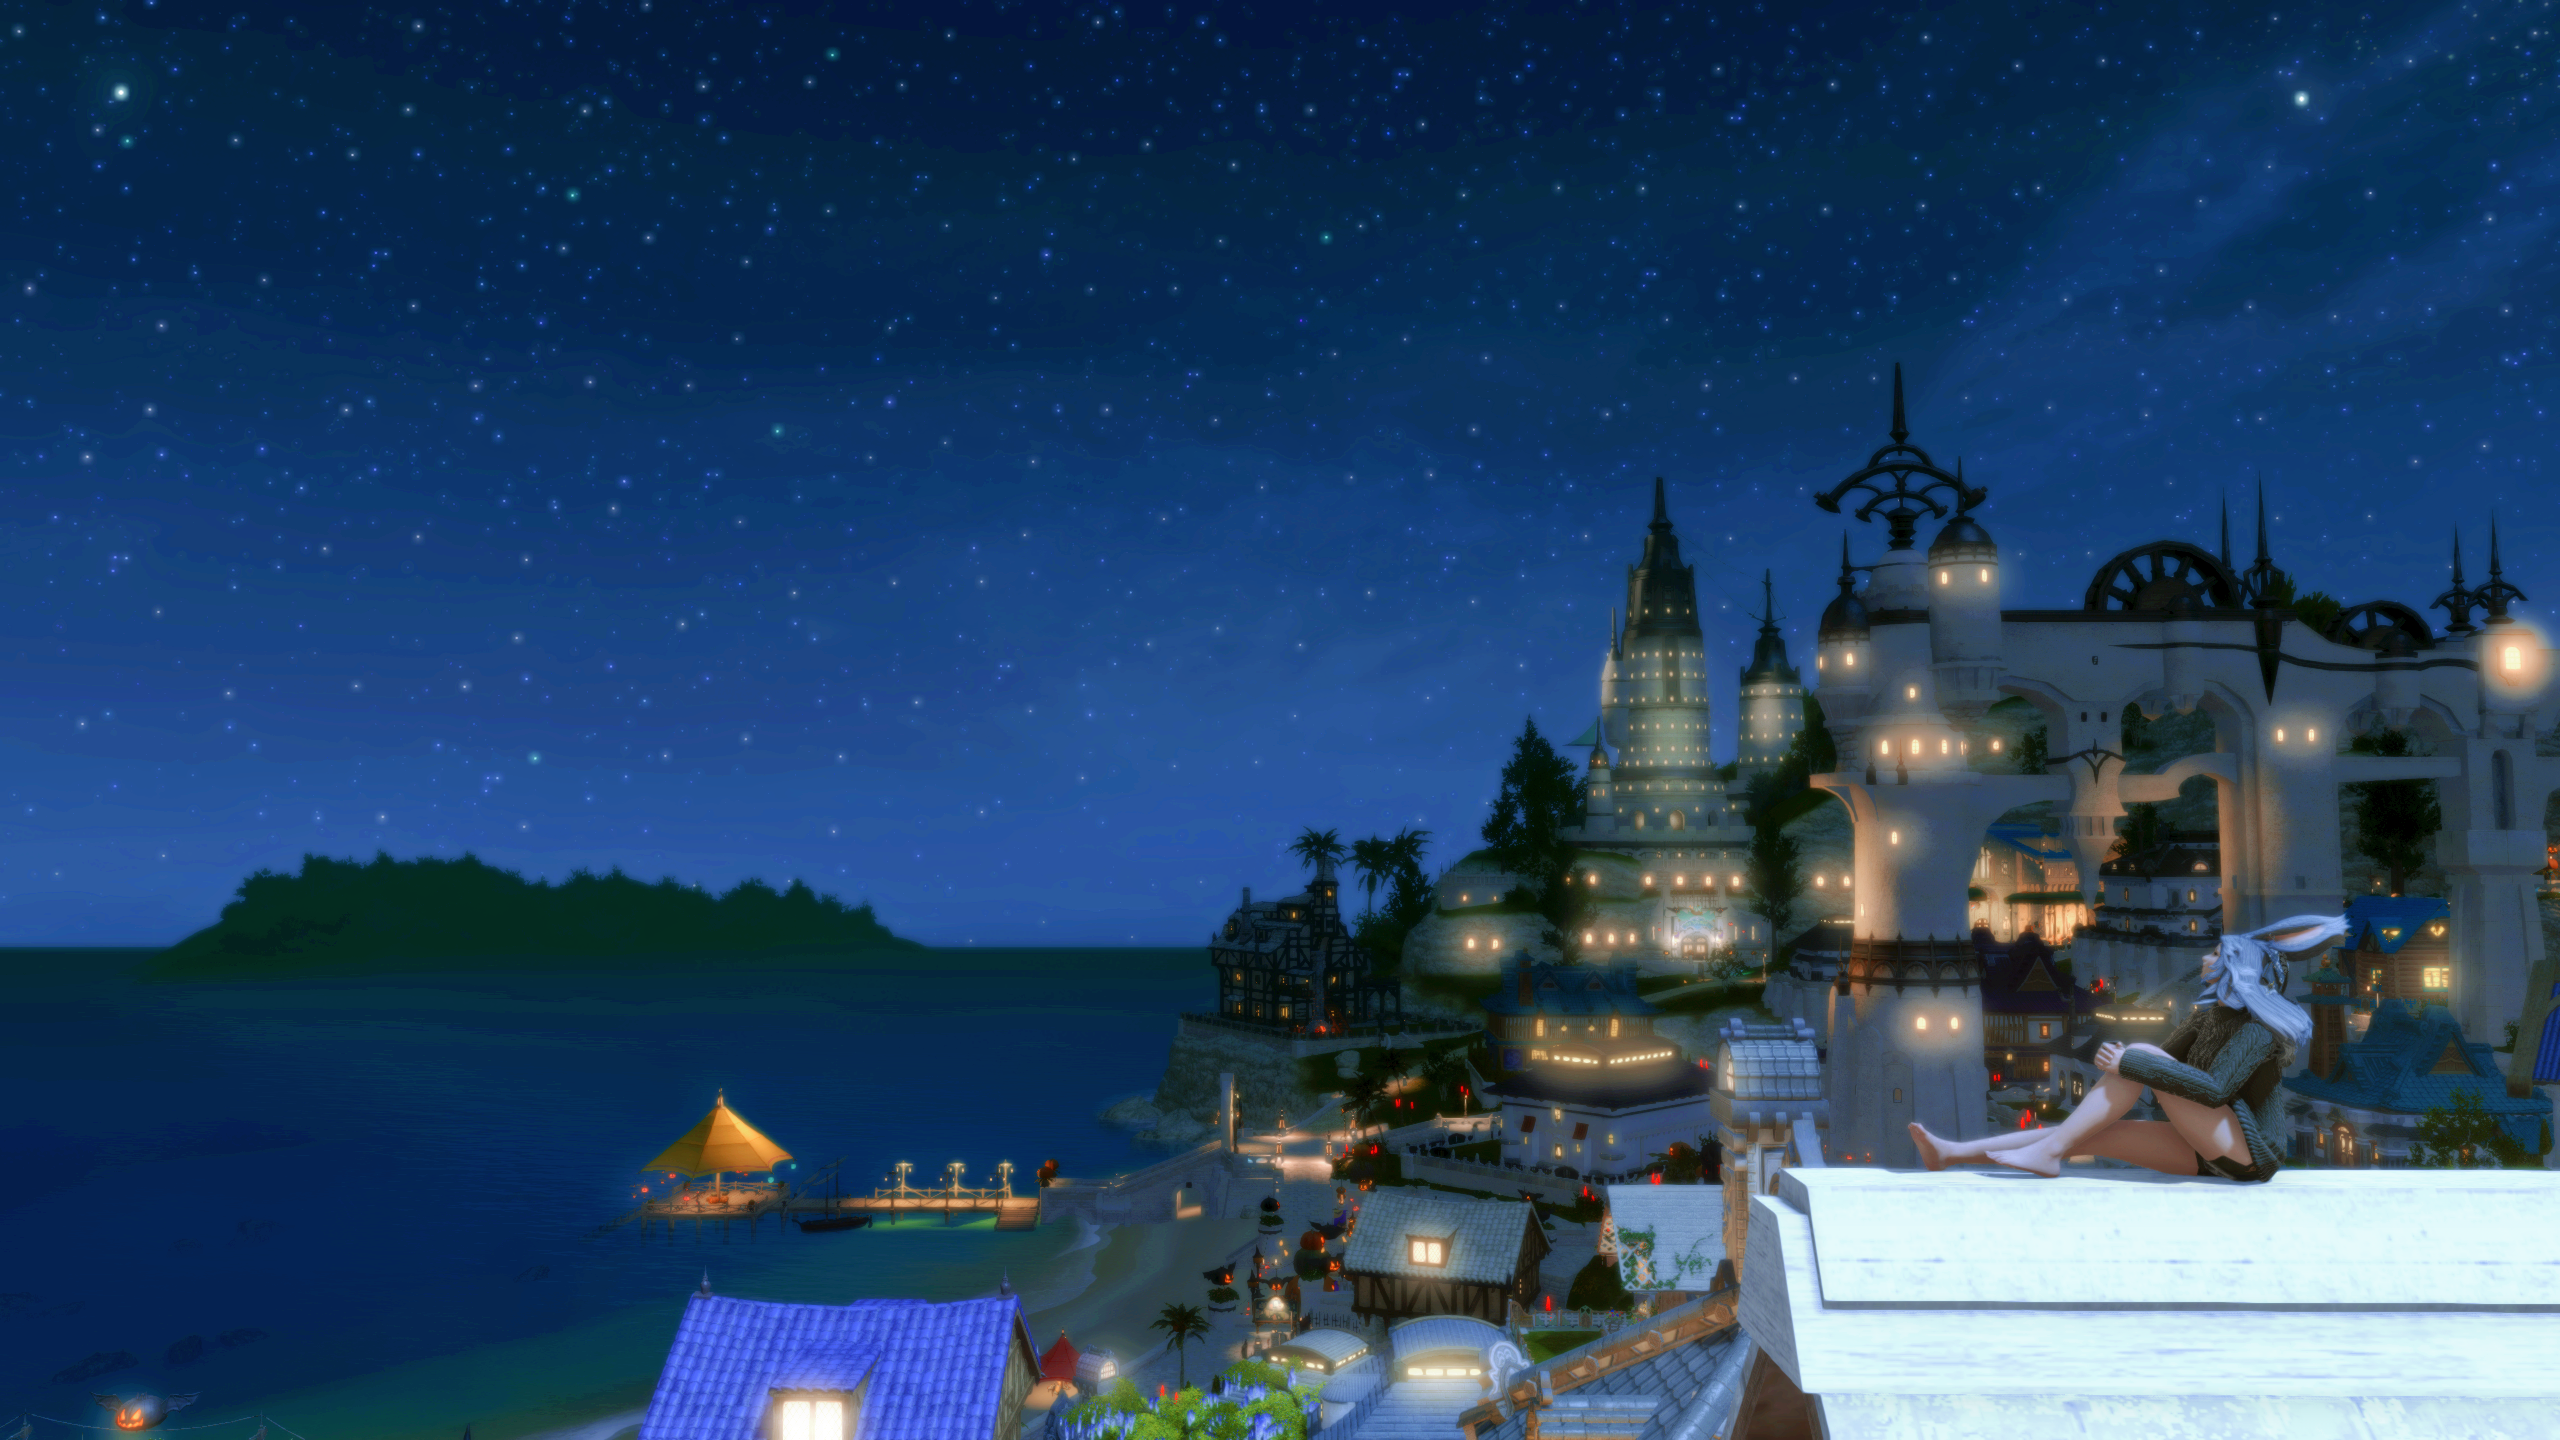 Logement Final Fantasy 14, avec une viera assise sur le toit de la maison